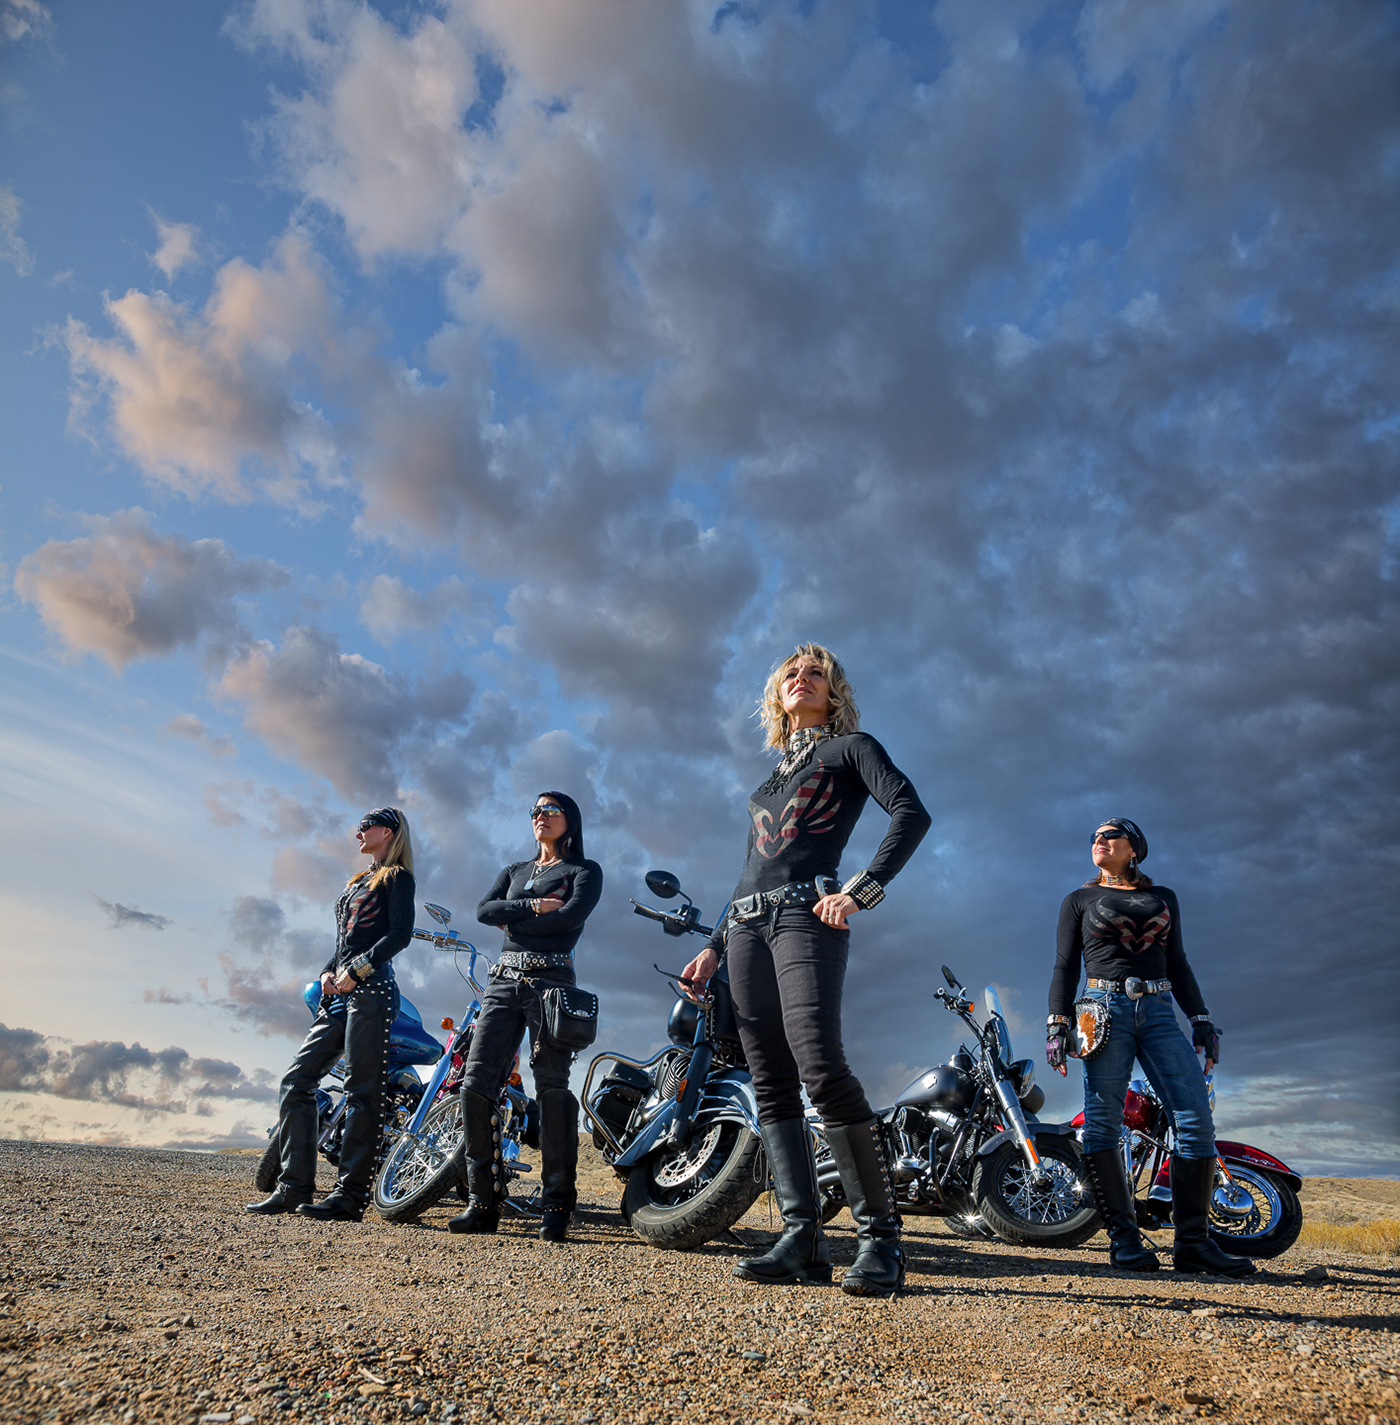 motorcycling women motorcycling harley davidsons big bikes Road Warriors motorcycling photography photo shoot